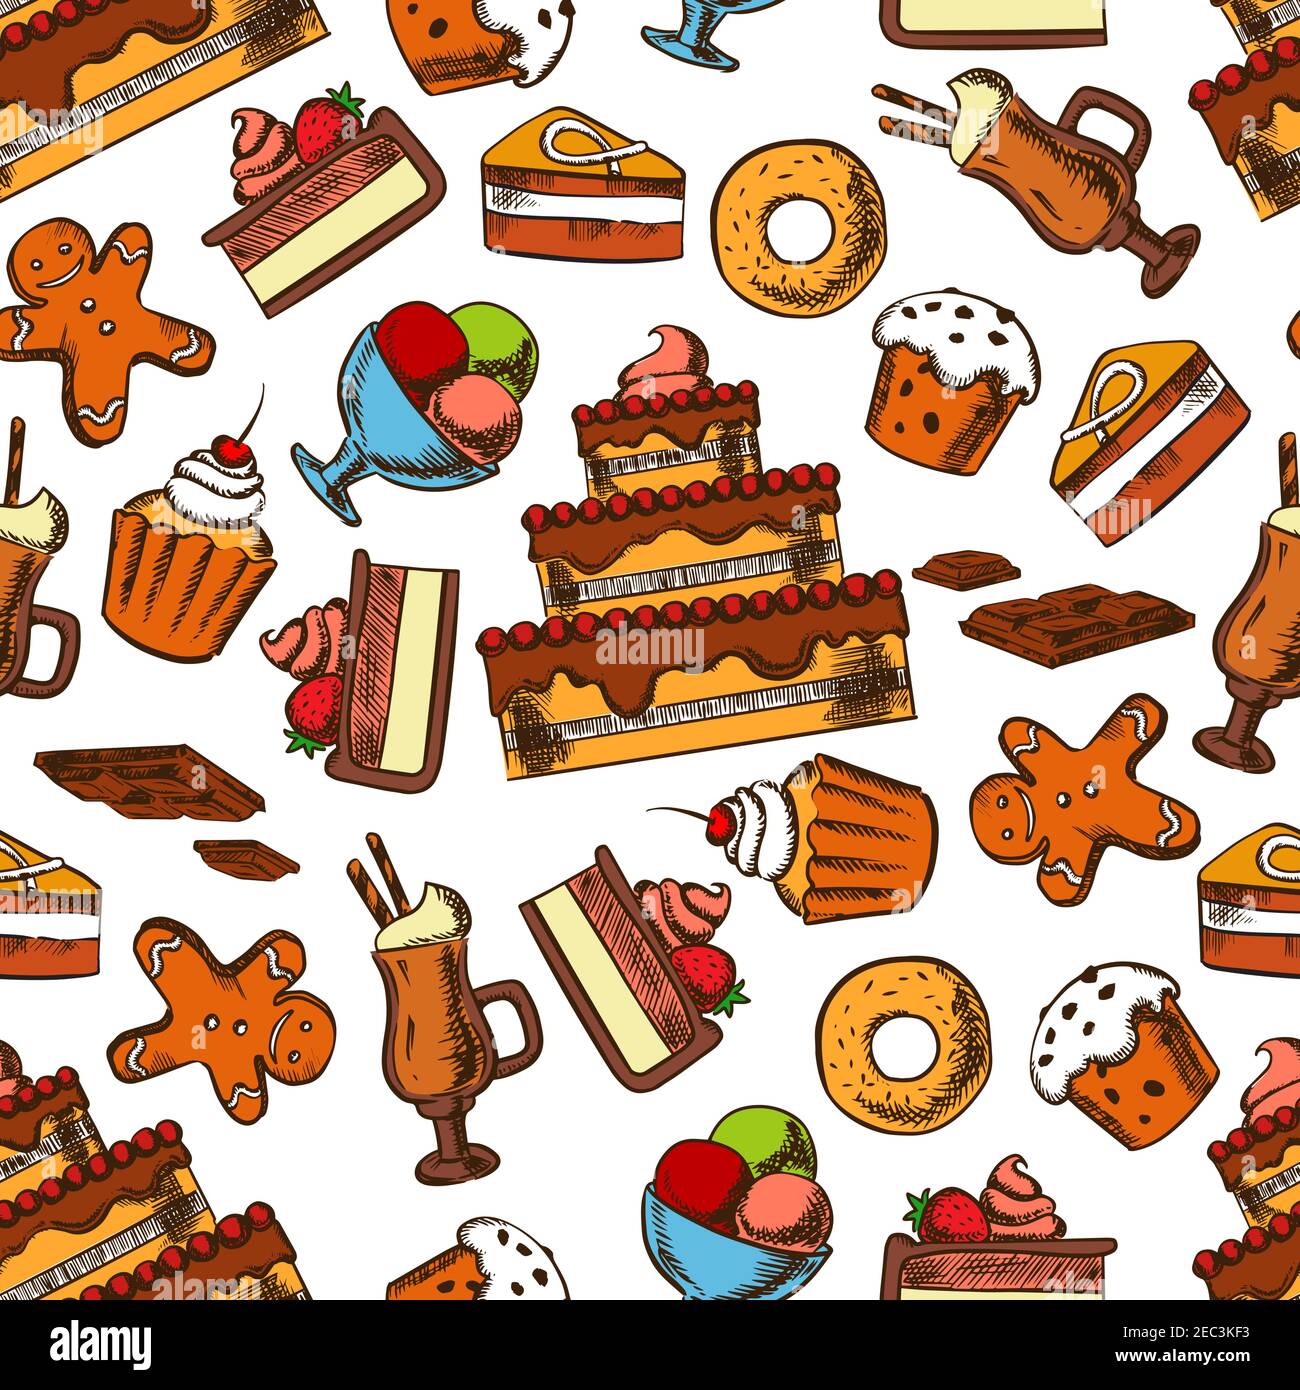 Le chocolat se dégustere en délicieux gâteaux à plusieurs niveaux et petits gâteaux aux fruits et à la crème, muffins glacés aux raisins secs et beignets, sundae ic Illustration de Vecteur